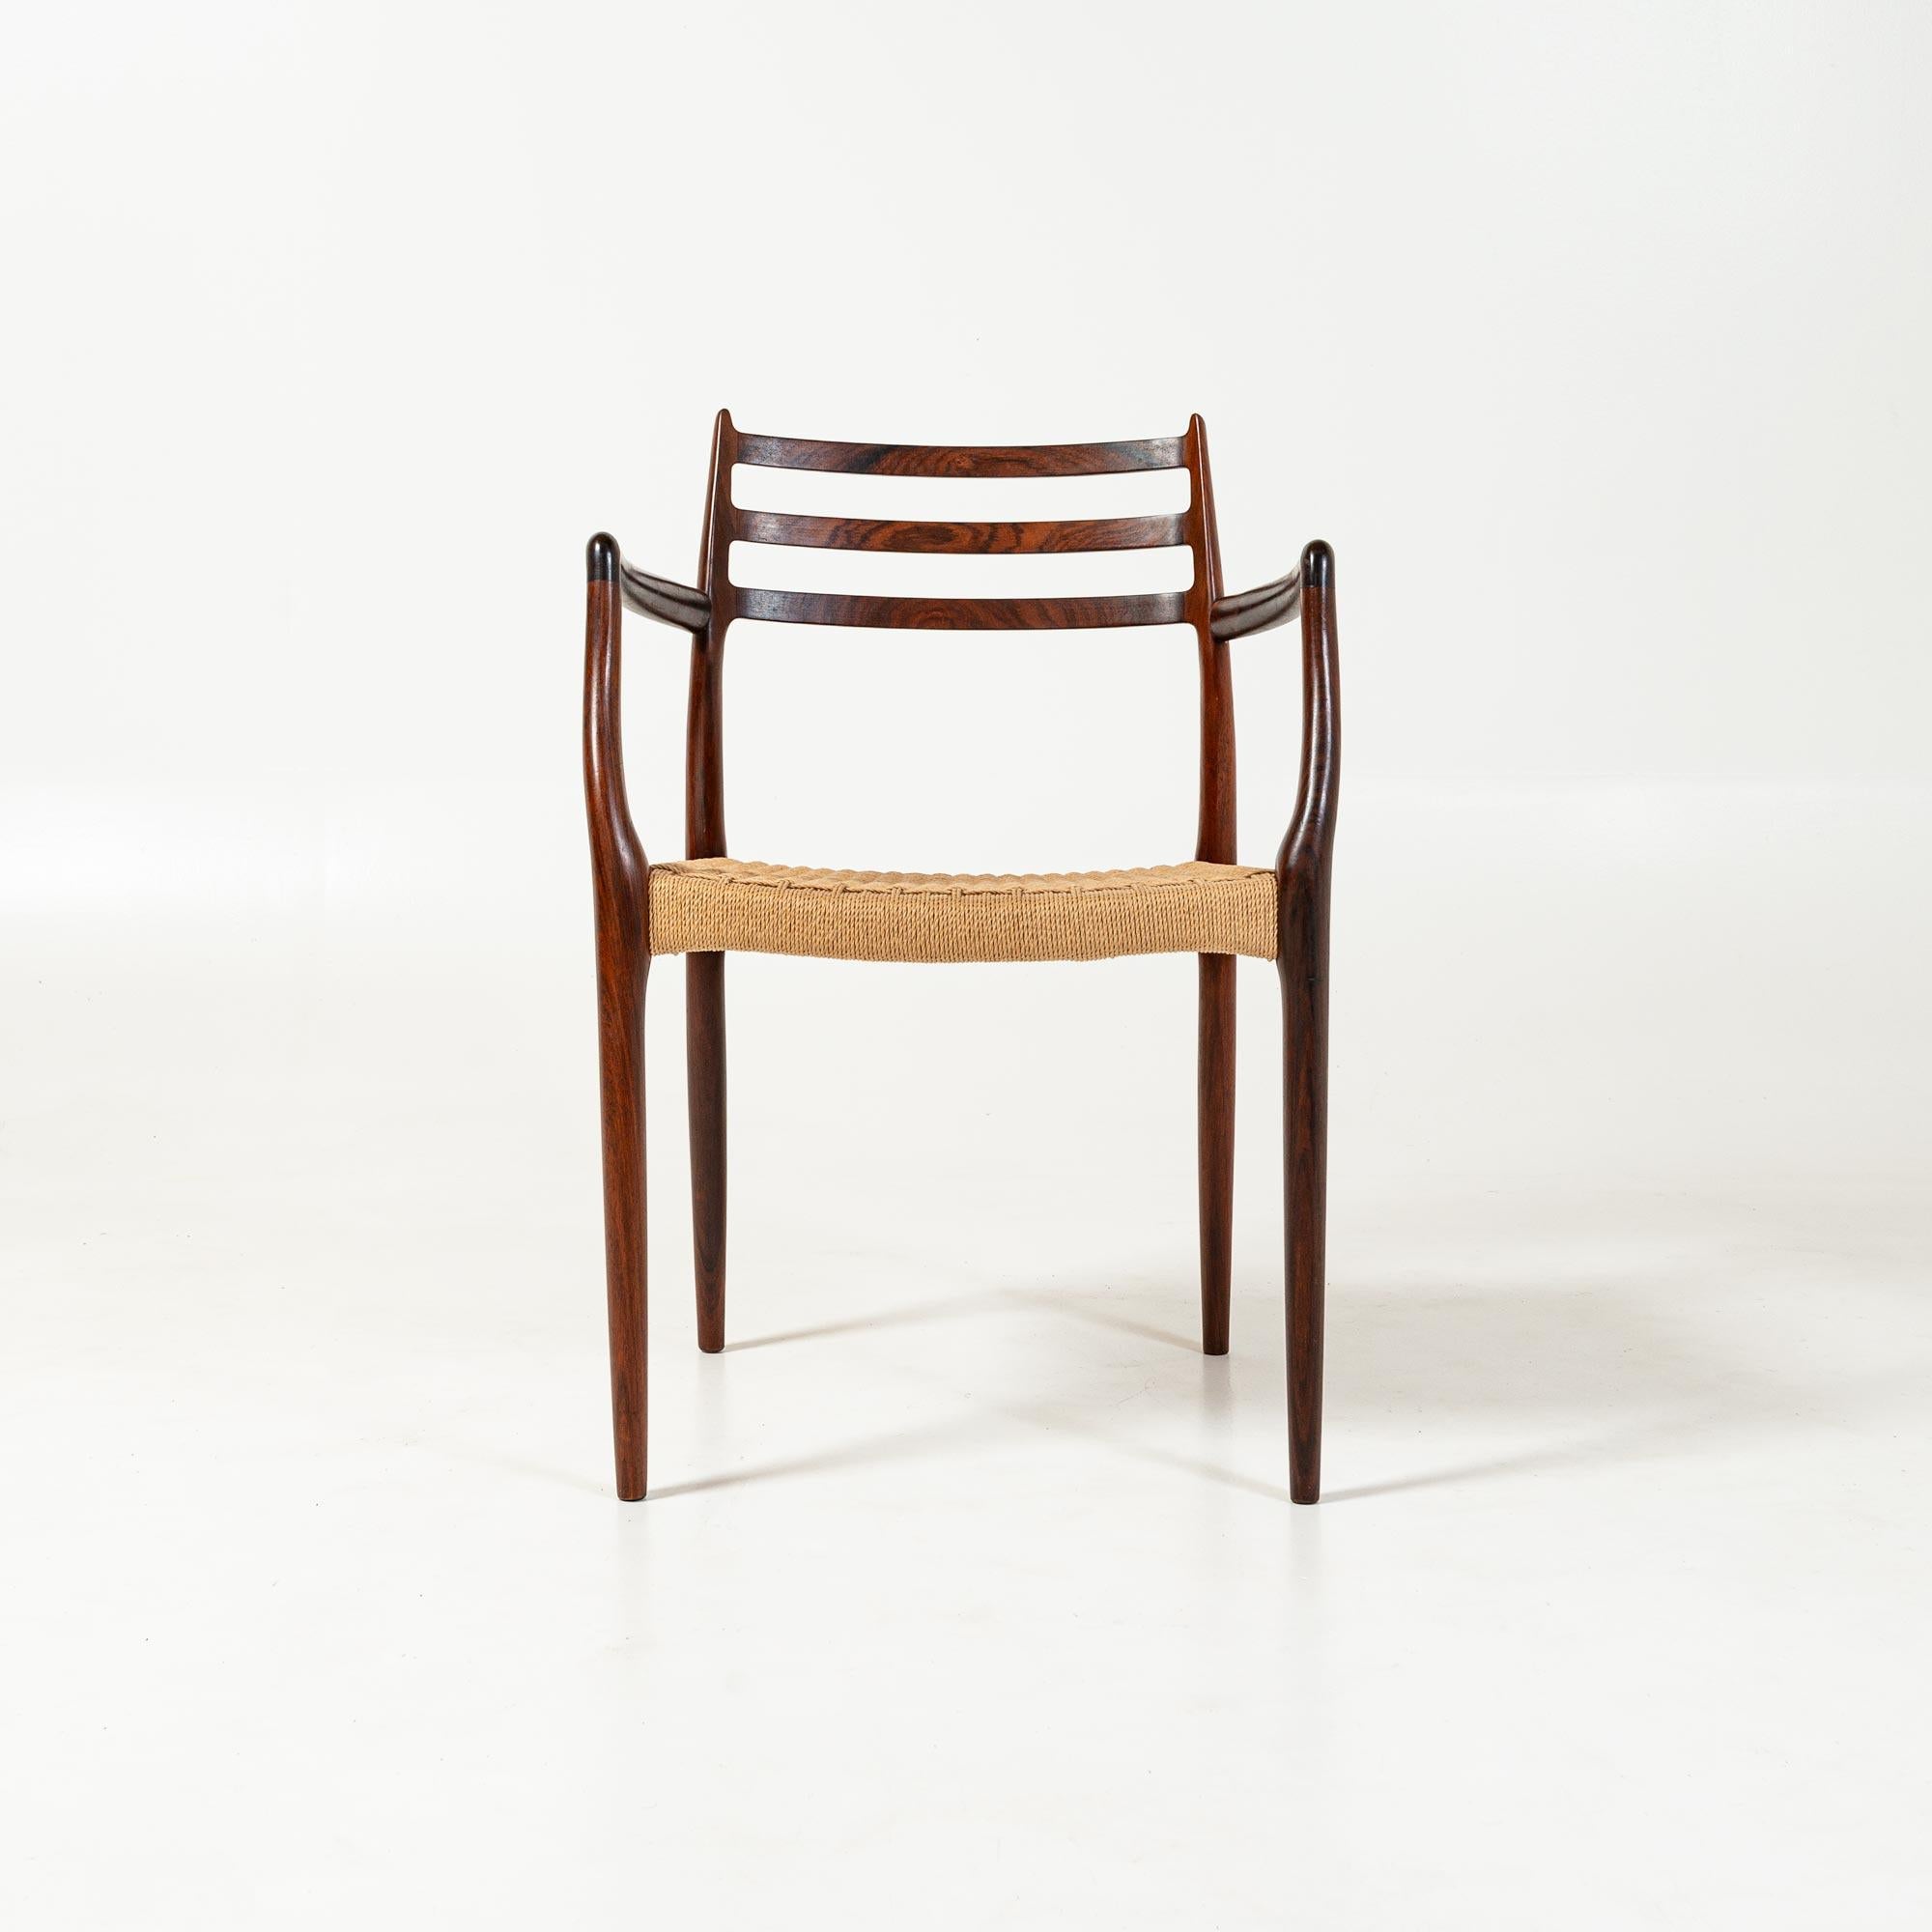 Der wohl begehrteste und seltenste Moller-Stuhl, vor allem in Palisanderholz. Dieses Sesselmodell 62 wurde von Niels Otto Møller entworfen. Hergestellt von der J.L Møllers møbelfabrik in Dänemark ist es in einem ausgezeichneten Zustand, mit